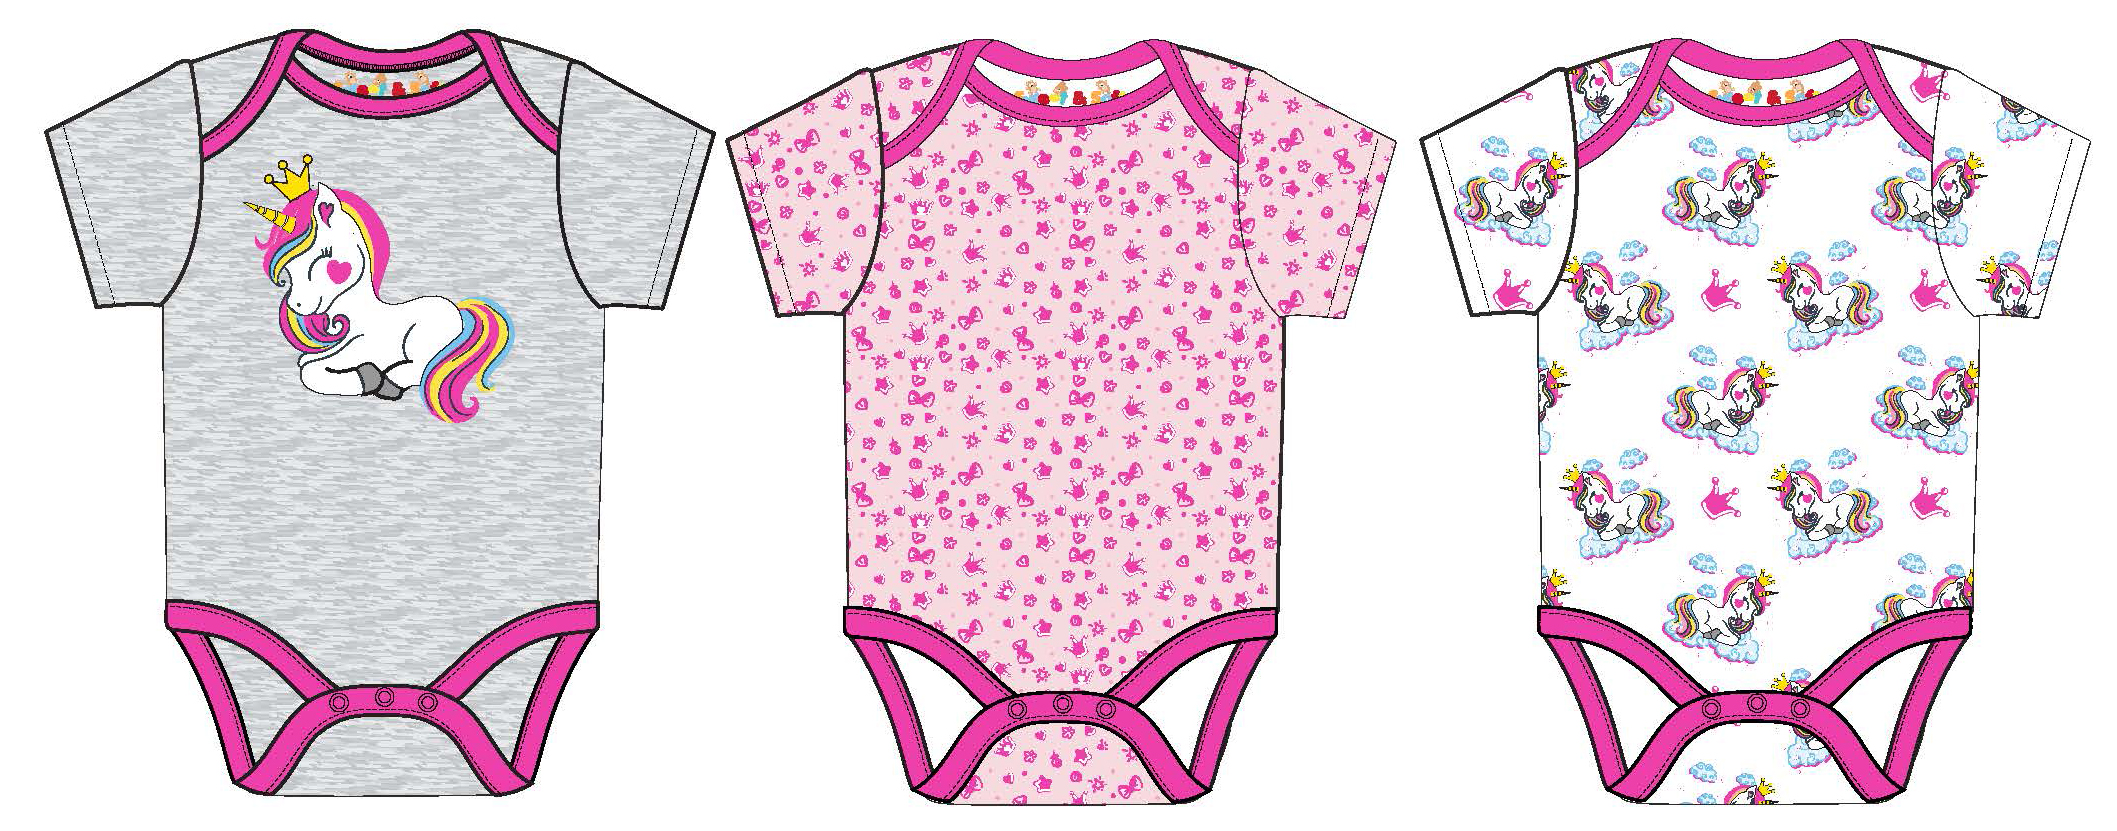 Baby Girl's Short-Sleeve Bodysuit Onesies w/ Unicorn & Daisy FLOWER Print -Sizes 0/3M-9M - 3-Pack